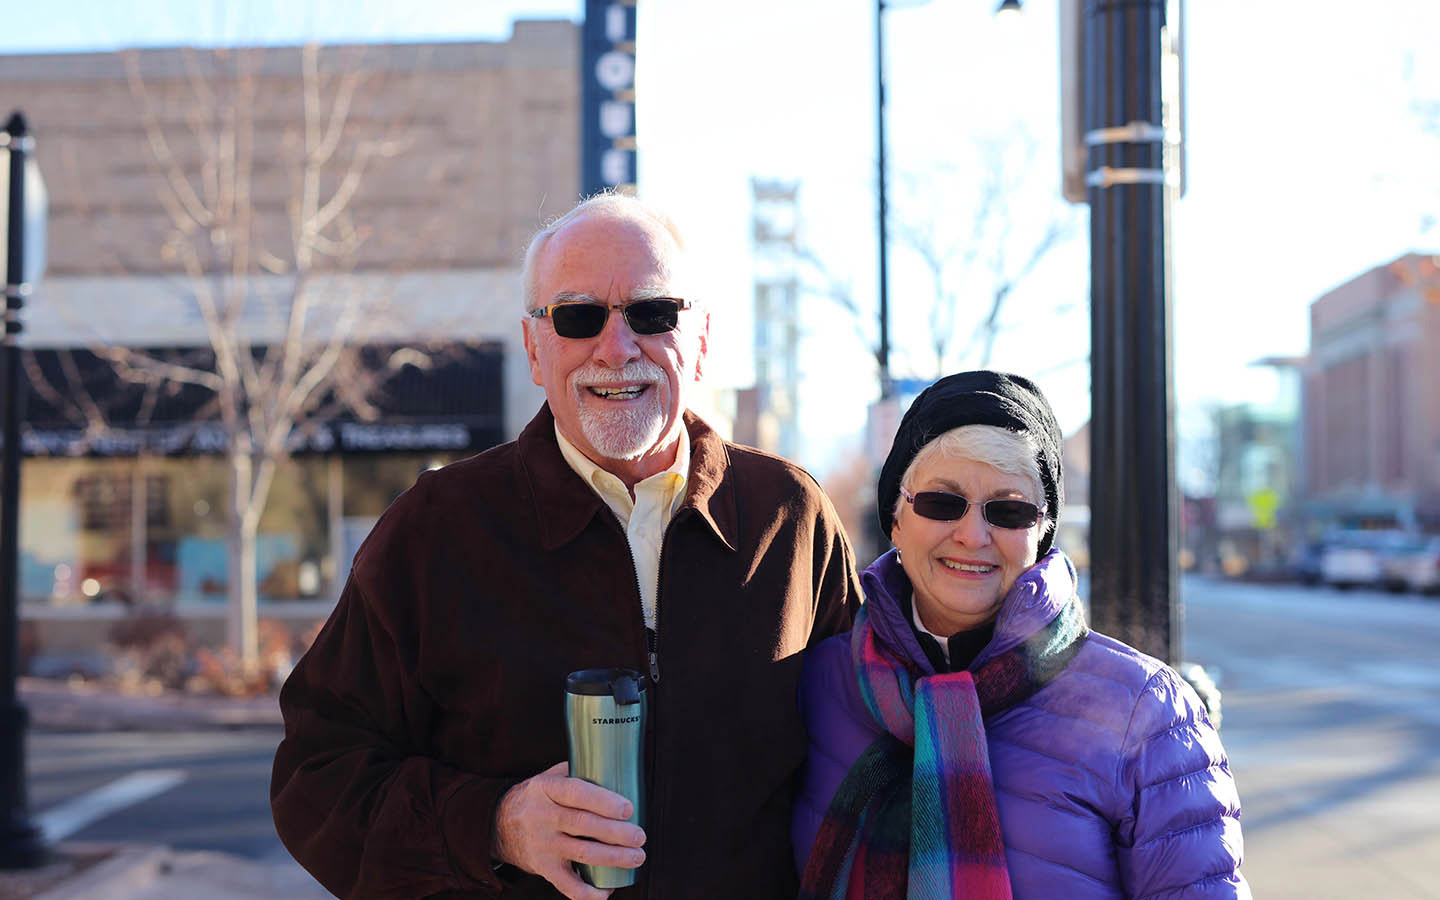 Cochlear-bruker Tom og hans kone Brenda poserer for et bilde på gaten